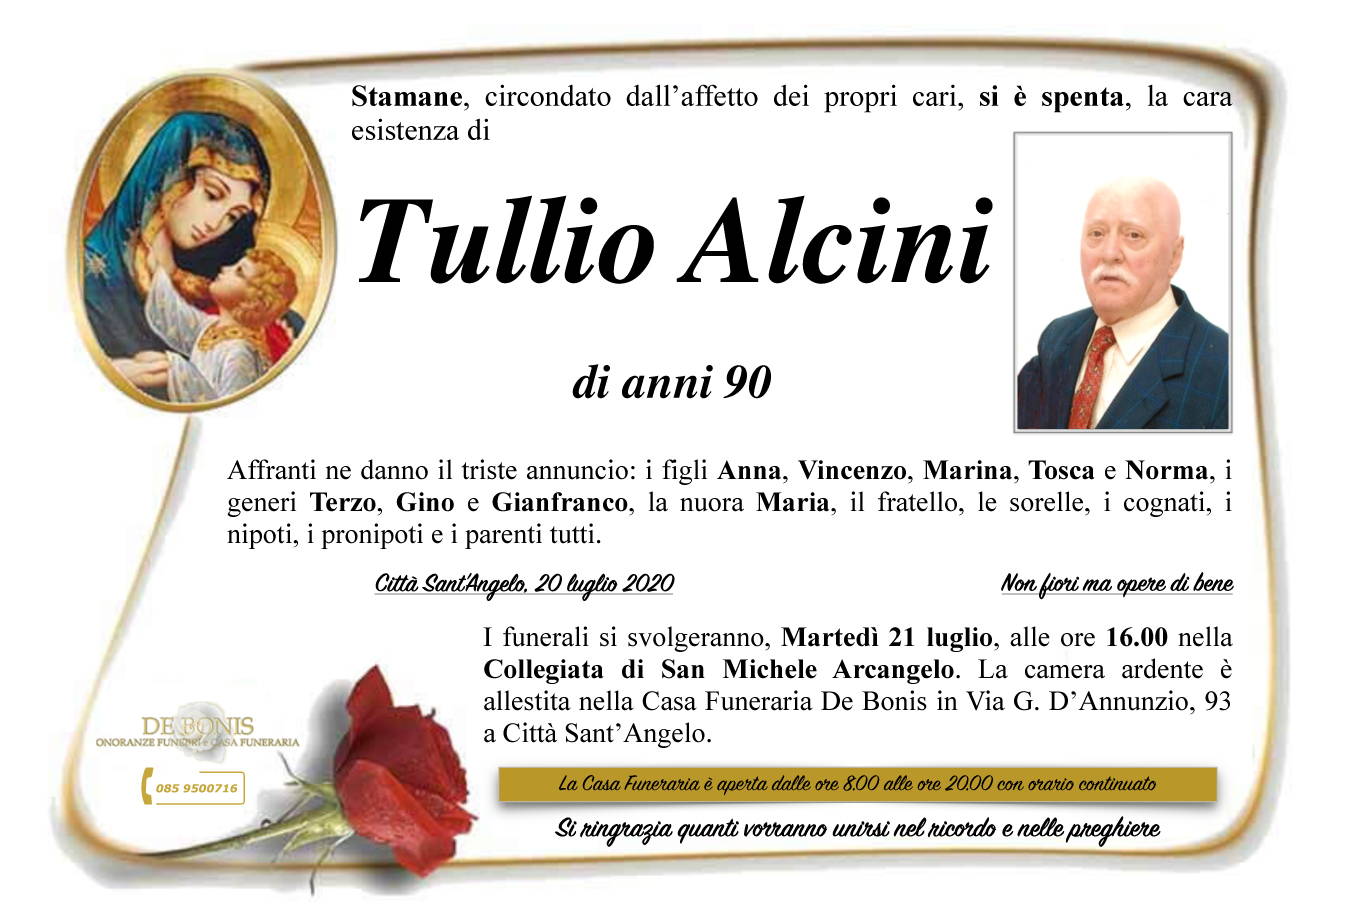 Tullio Alcini